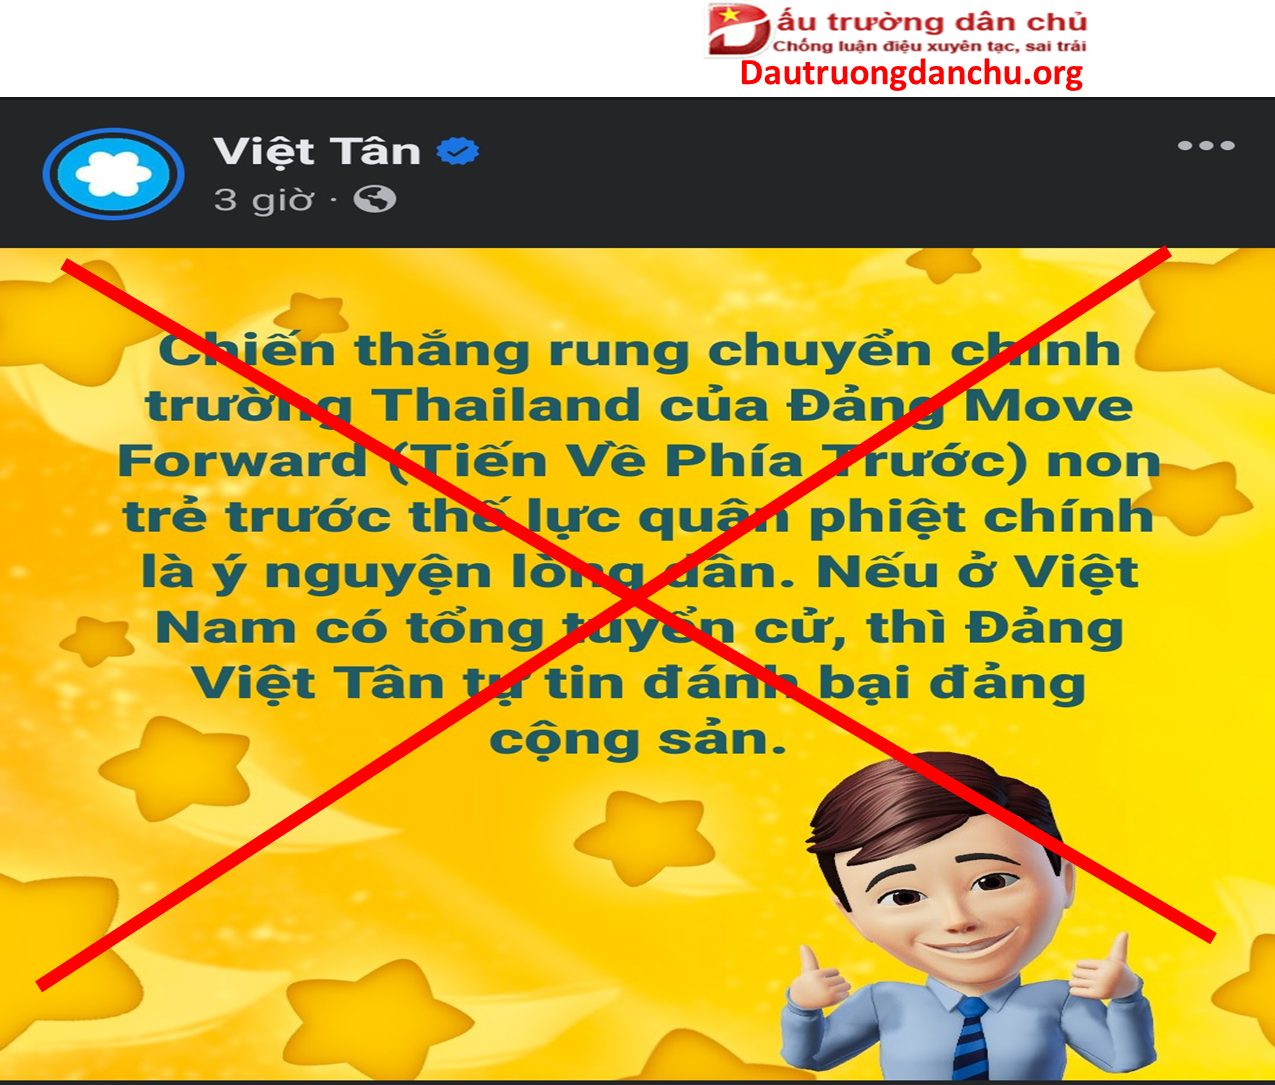 Ai lại phát biểu liều thế bao giờ hả Việt Tân